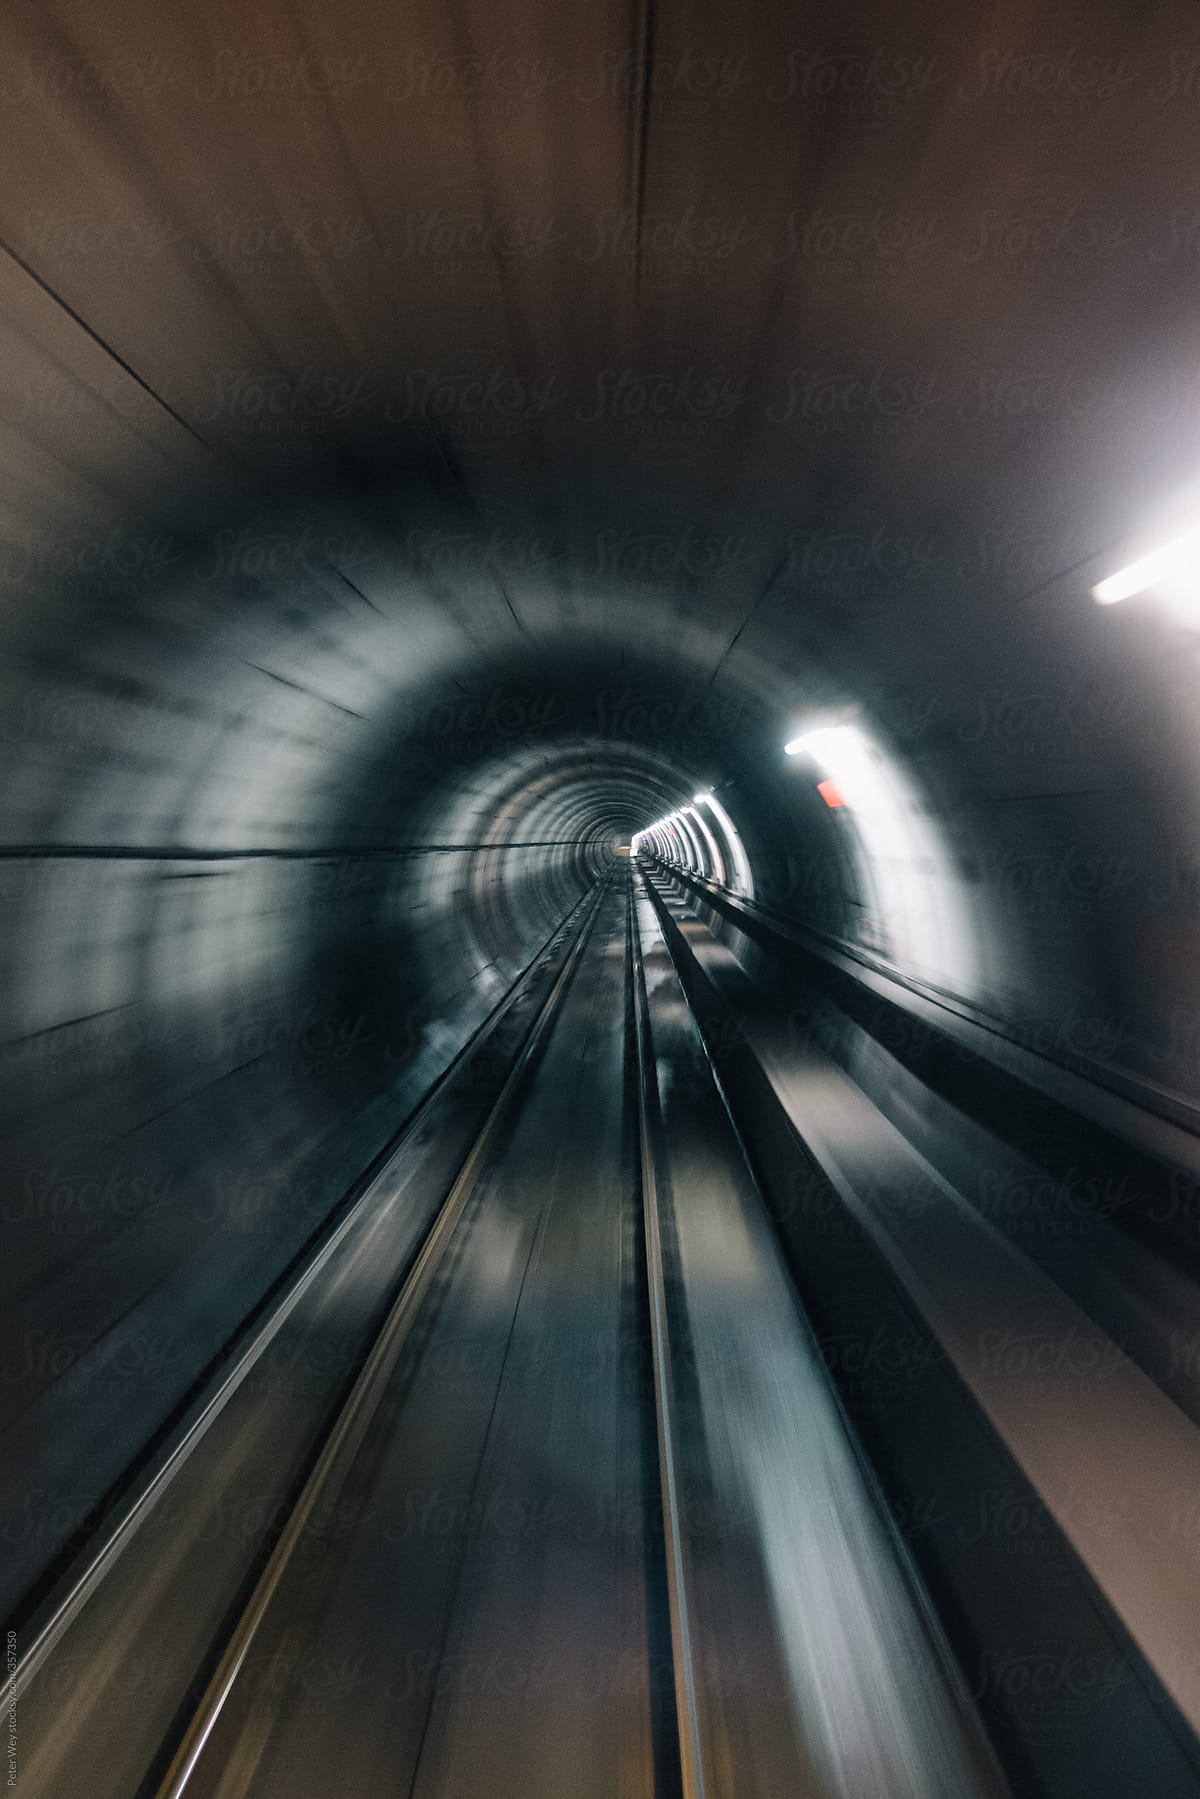 Motion blurred view of underground tunnel